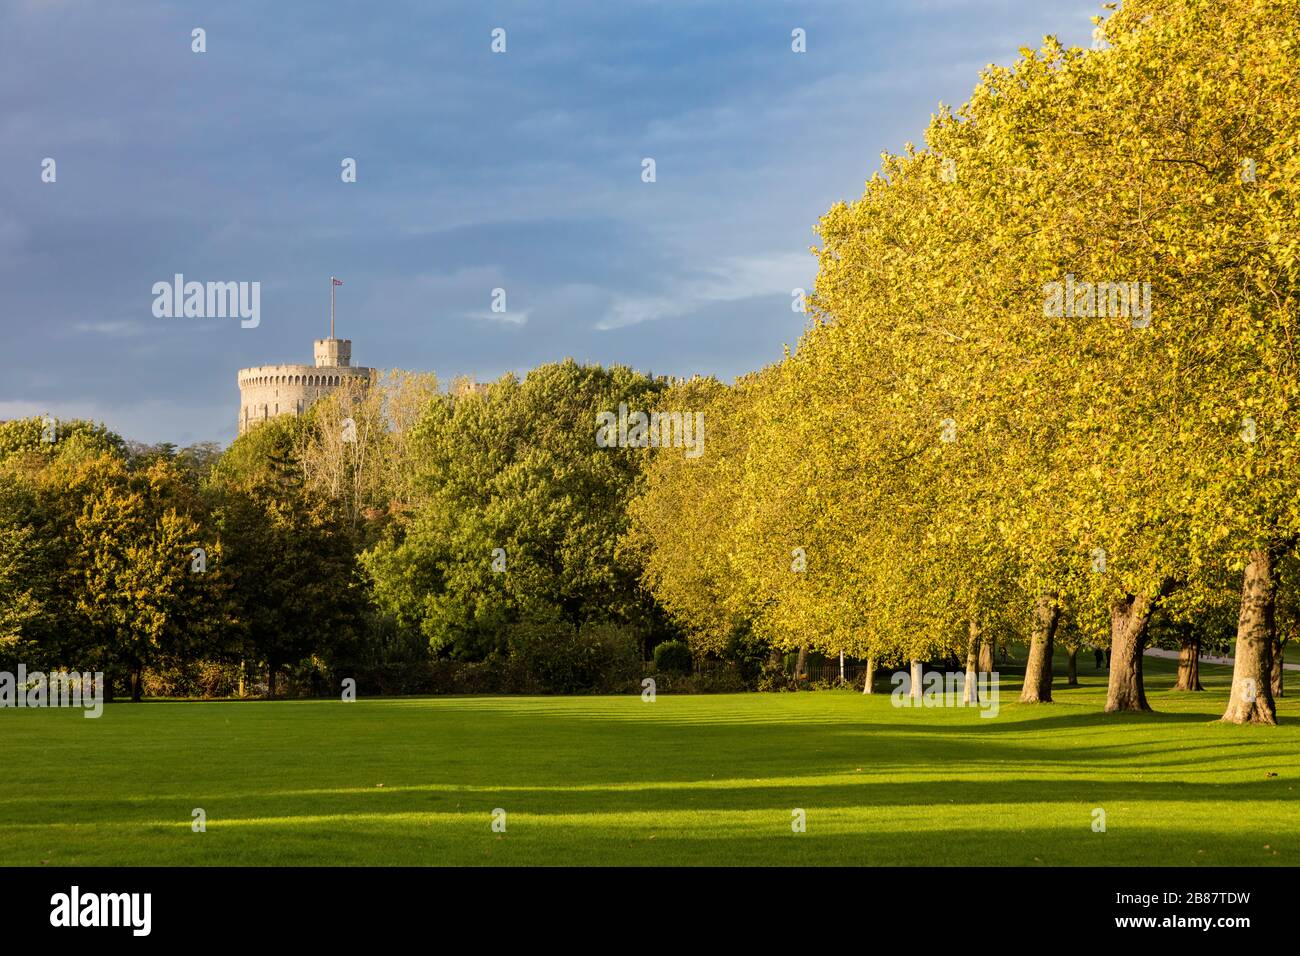 Soirée d'automne lumière du soleil sur les arbres de jardin sous le château de Windsor, Windsor, Angleterre, Royaume-Uni Banque D'Images